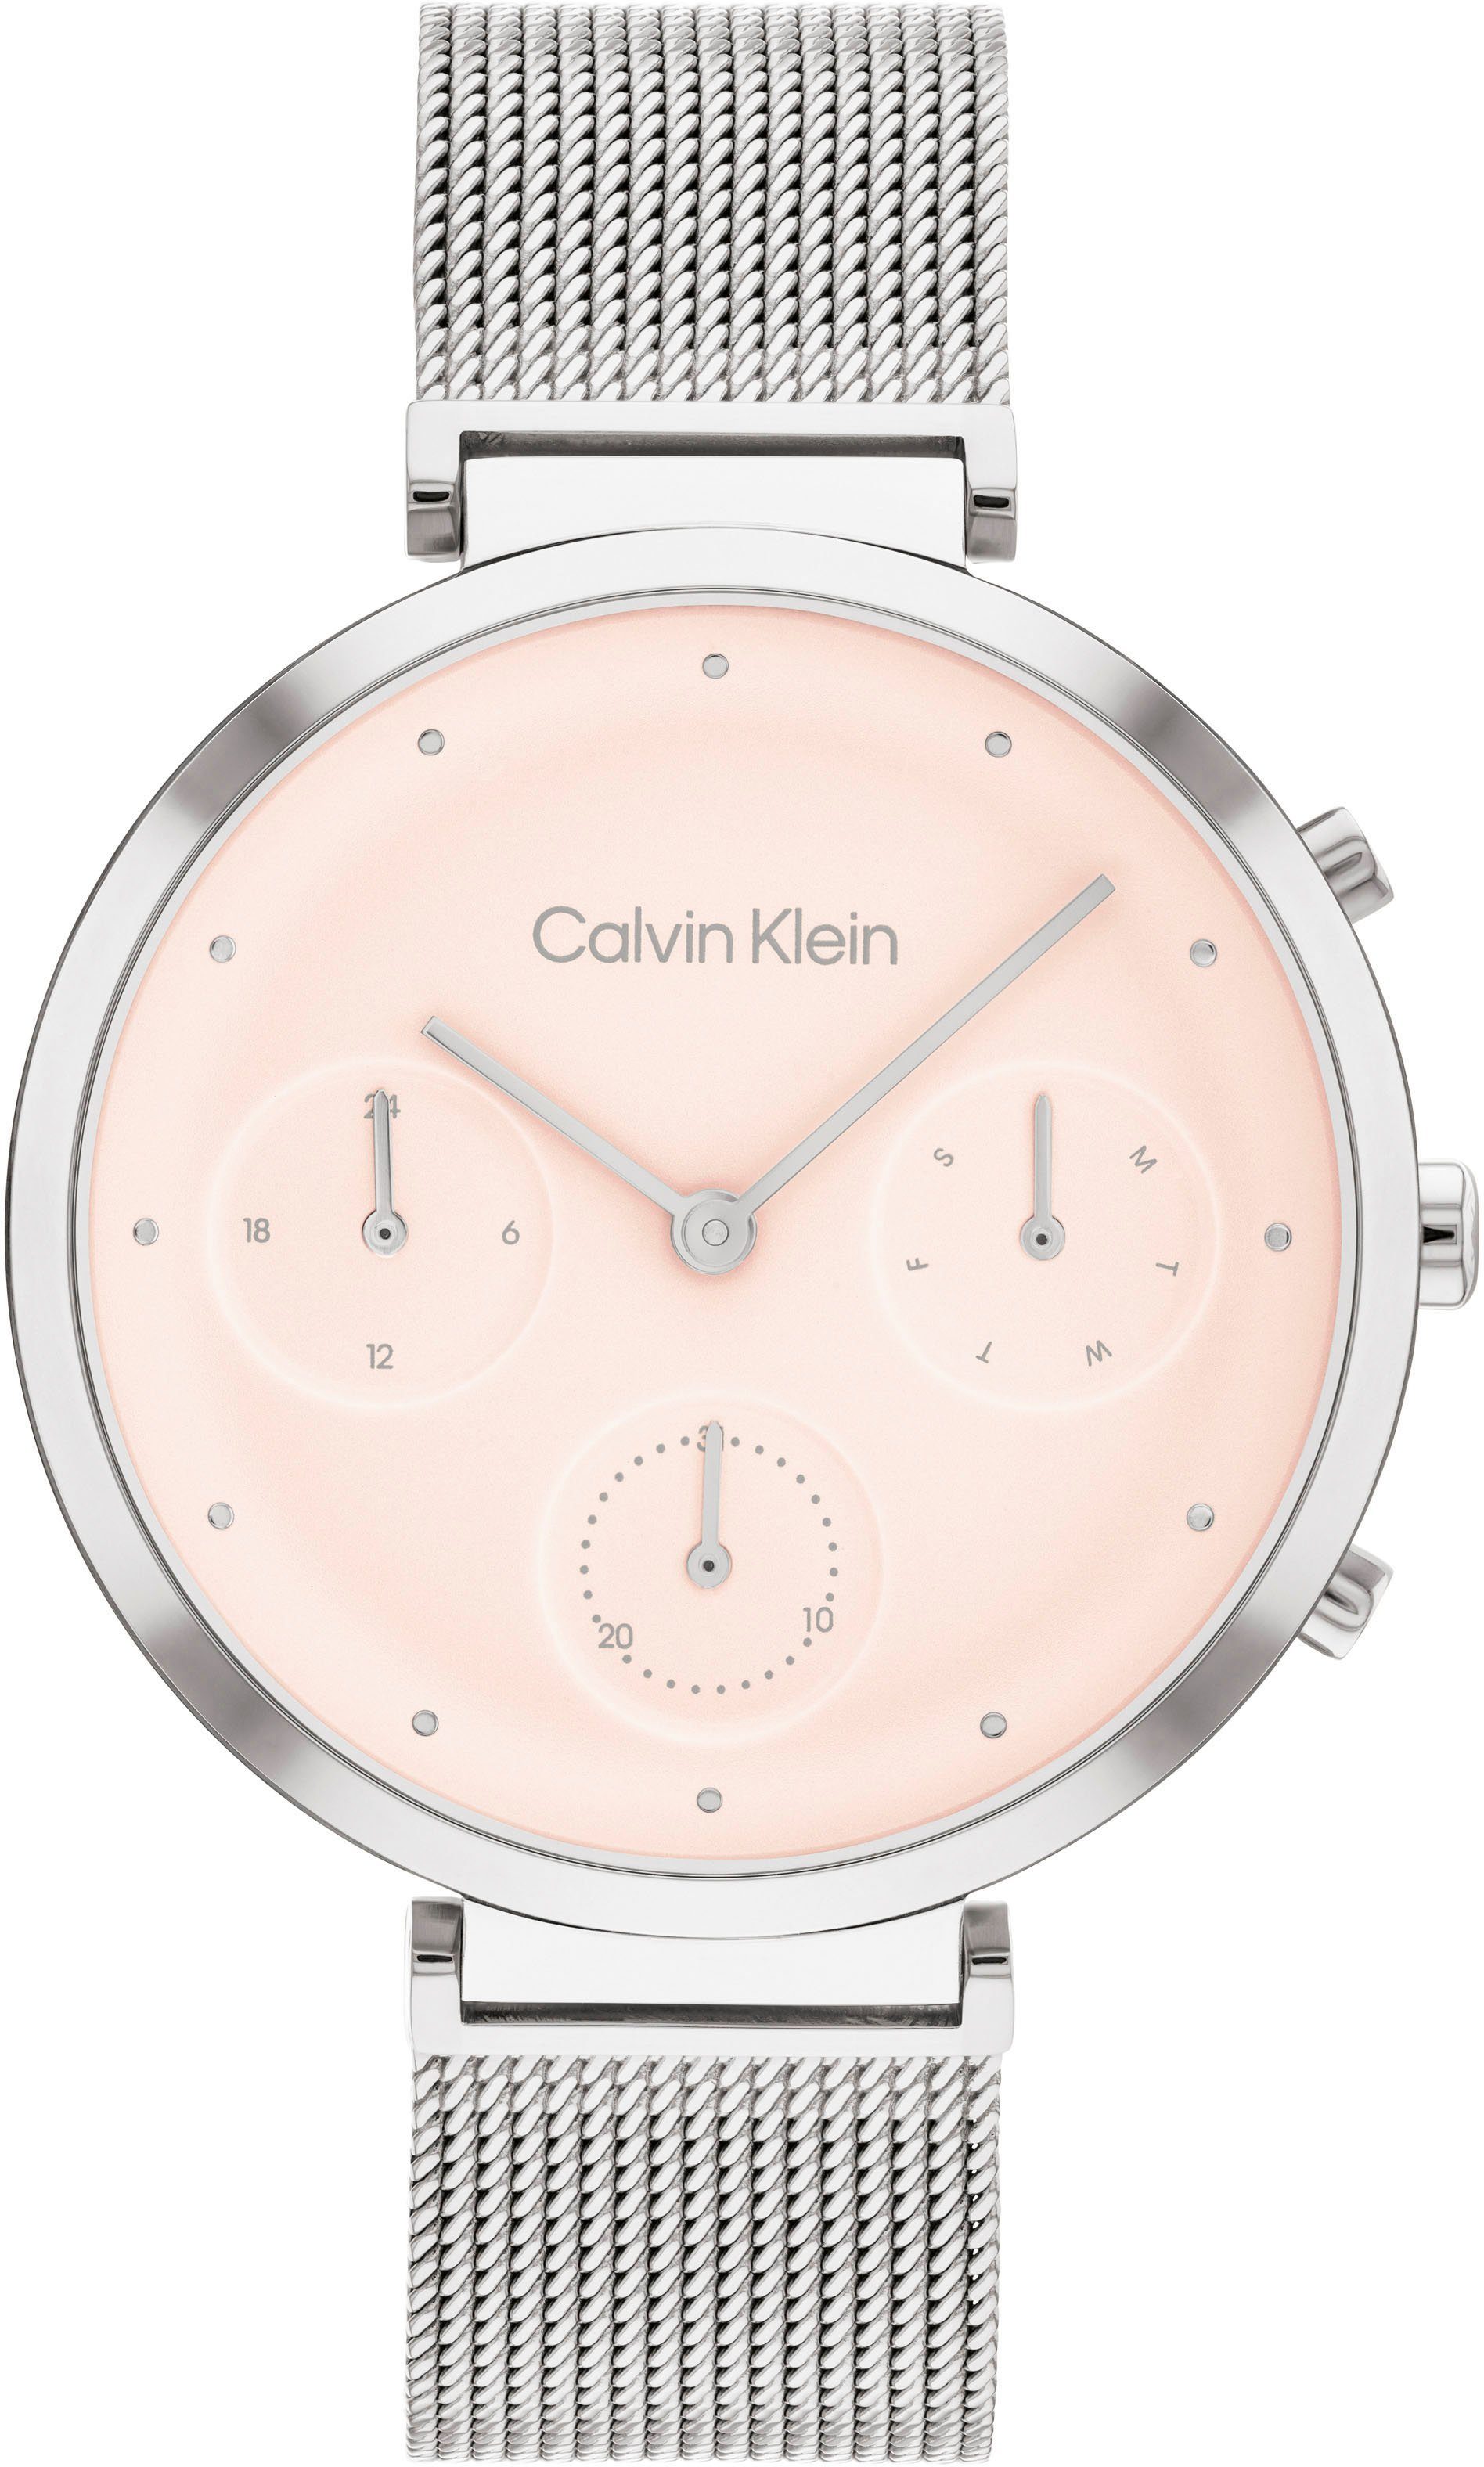 Calvin Klein Multifunktionsuhr TIMELESS, 25200286, Quarzuhr, Armbanduhr, Damenuhr, Datum, 12/24-Stunden-Anzeige